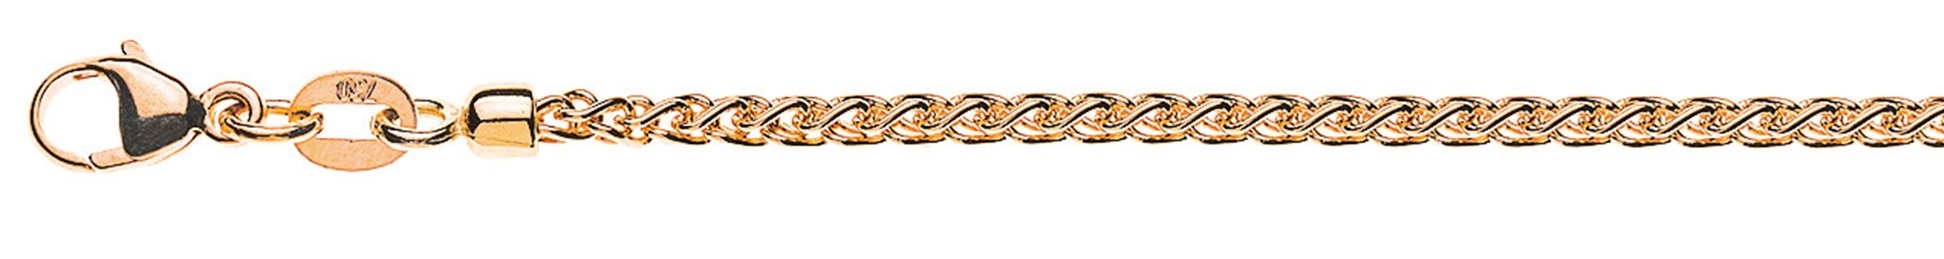 AURONOS Prestige Necklace rose gold 18K cable chain 60cm 2.15mm